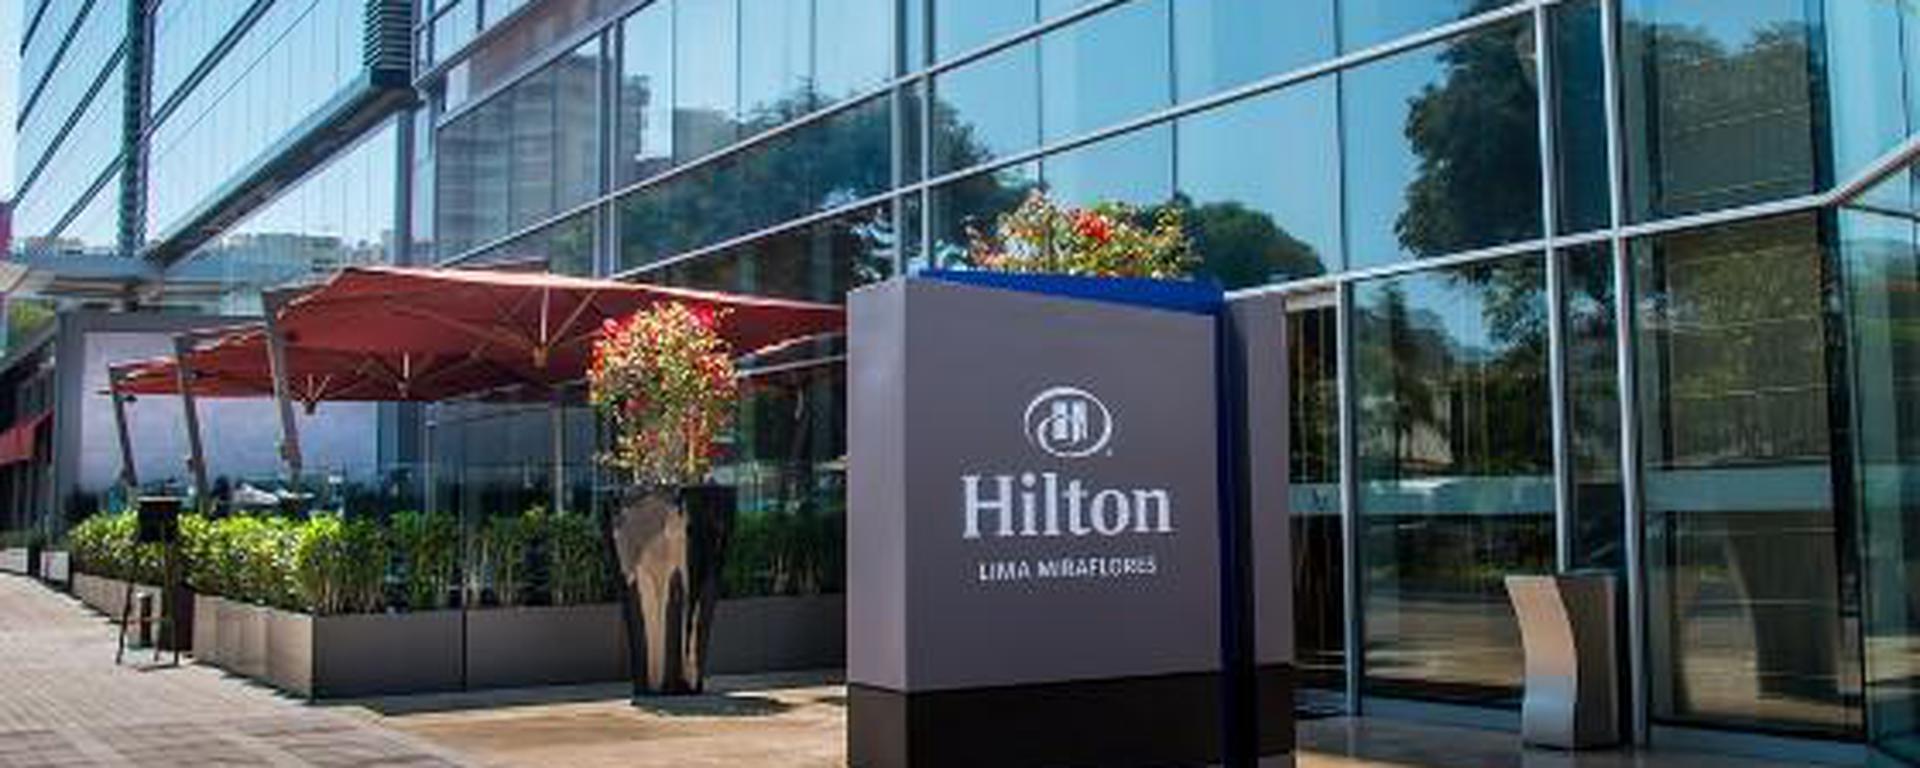 Hilton duplicará sus hoteles en cinco años y alista nuevas marcas: cuáles son y qué se viene en el sector hotelero